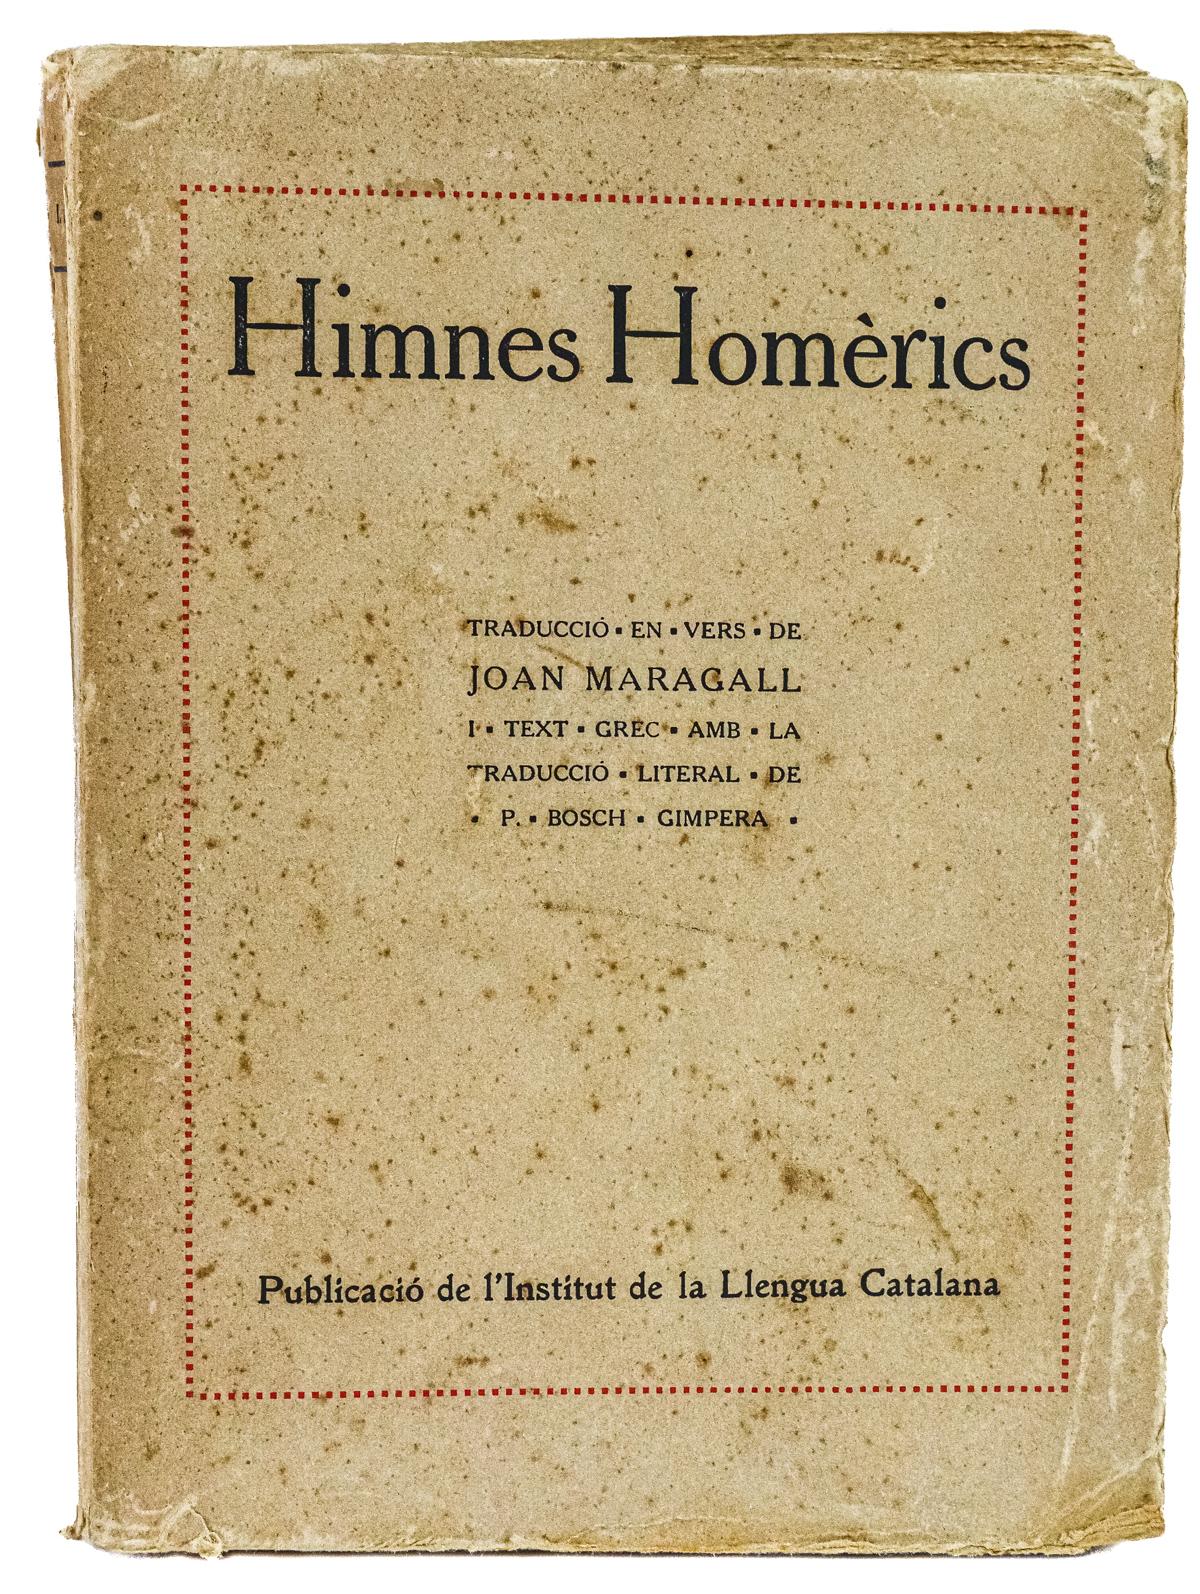 "HIMNES HOMÉRICS"